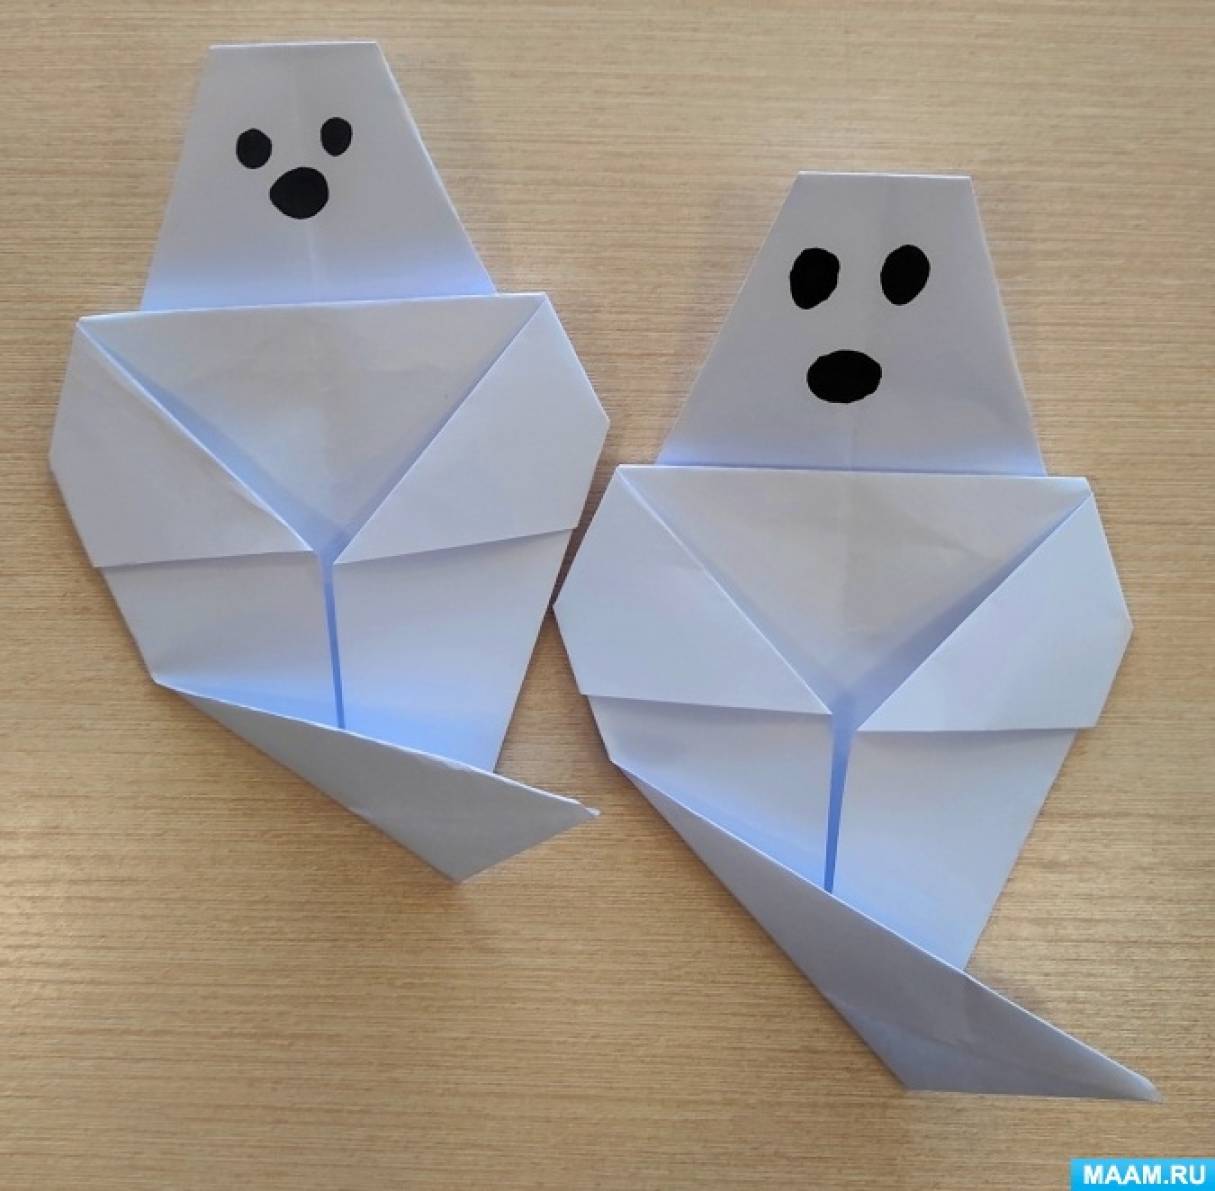 Выездной мастер-класс для школьников по оригами – Марина Тревел (rov-hyundai.ru)